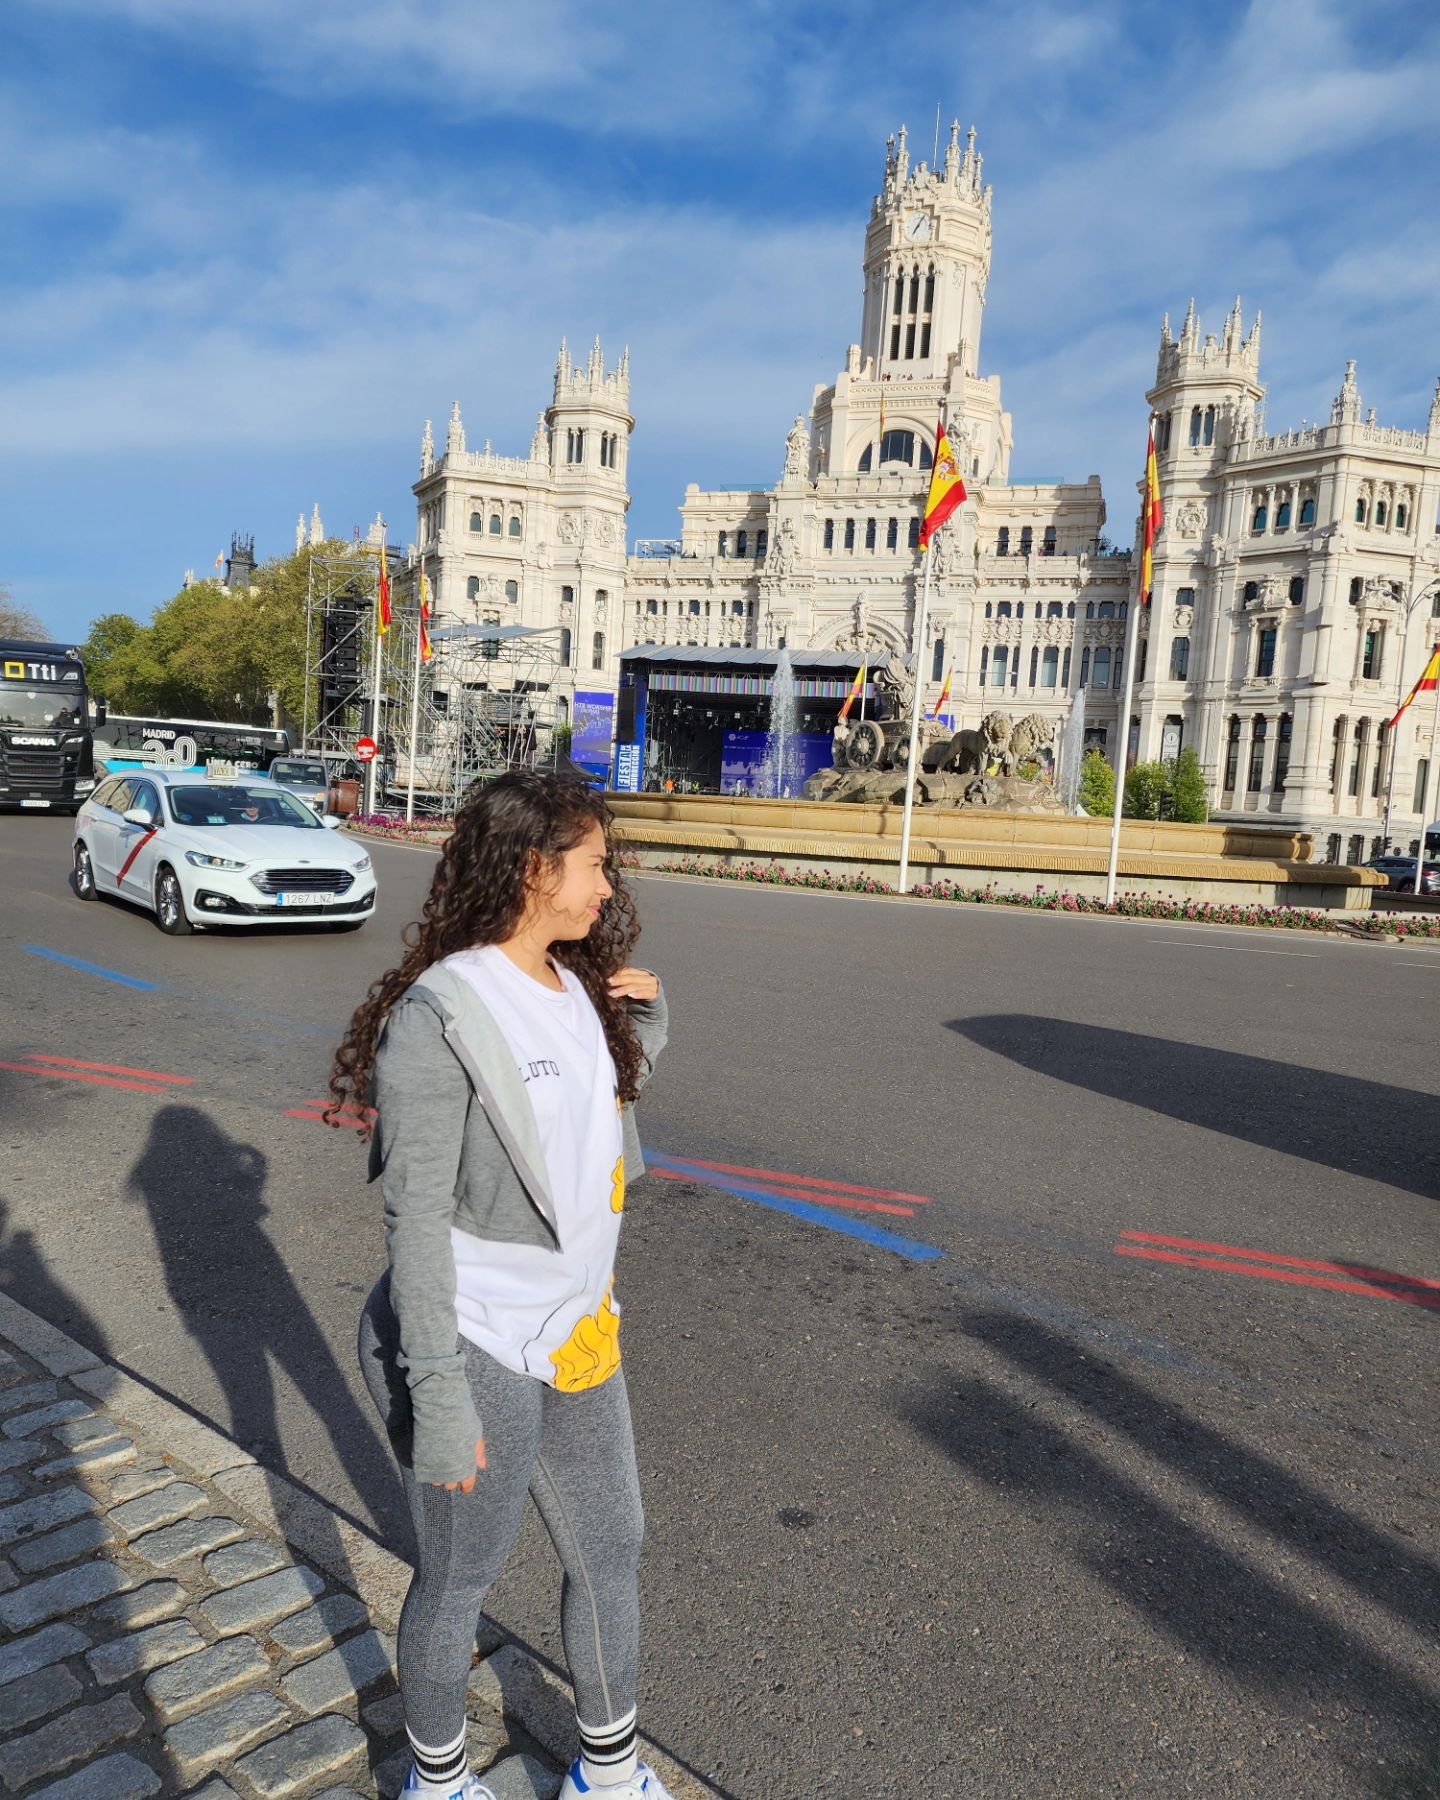 Knowing a little about Spain 🇪🇸
Conociendo un poco de españa 🇪🇸✨

.

Comenten lugares lindos para conocer de Madrid 🇪🇸
Tell me about nice places to meet in Madrid 🇪🇸